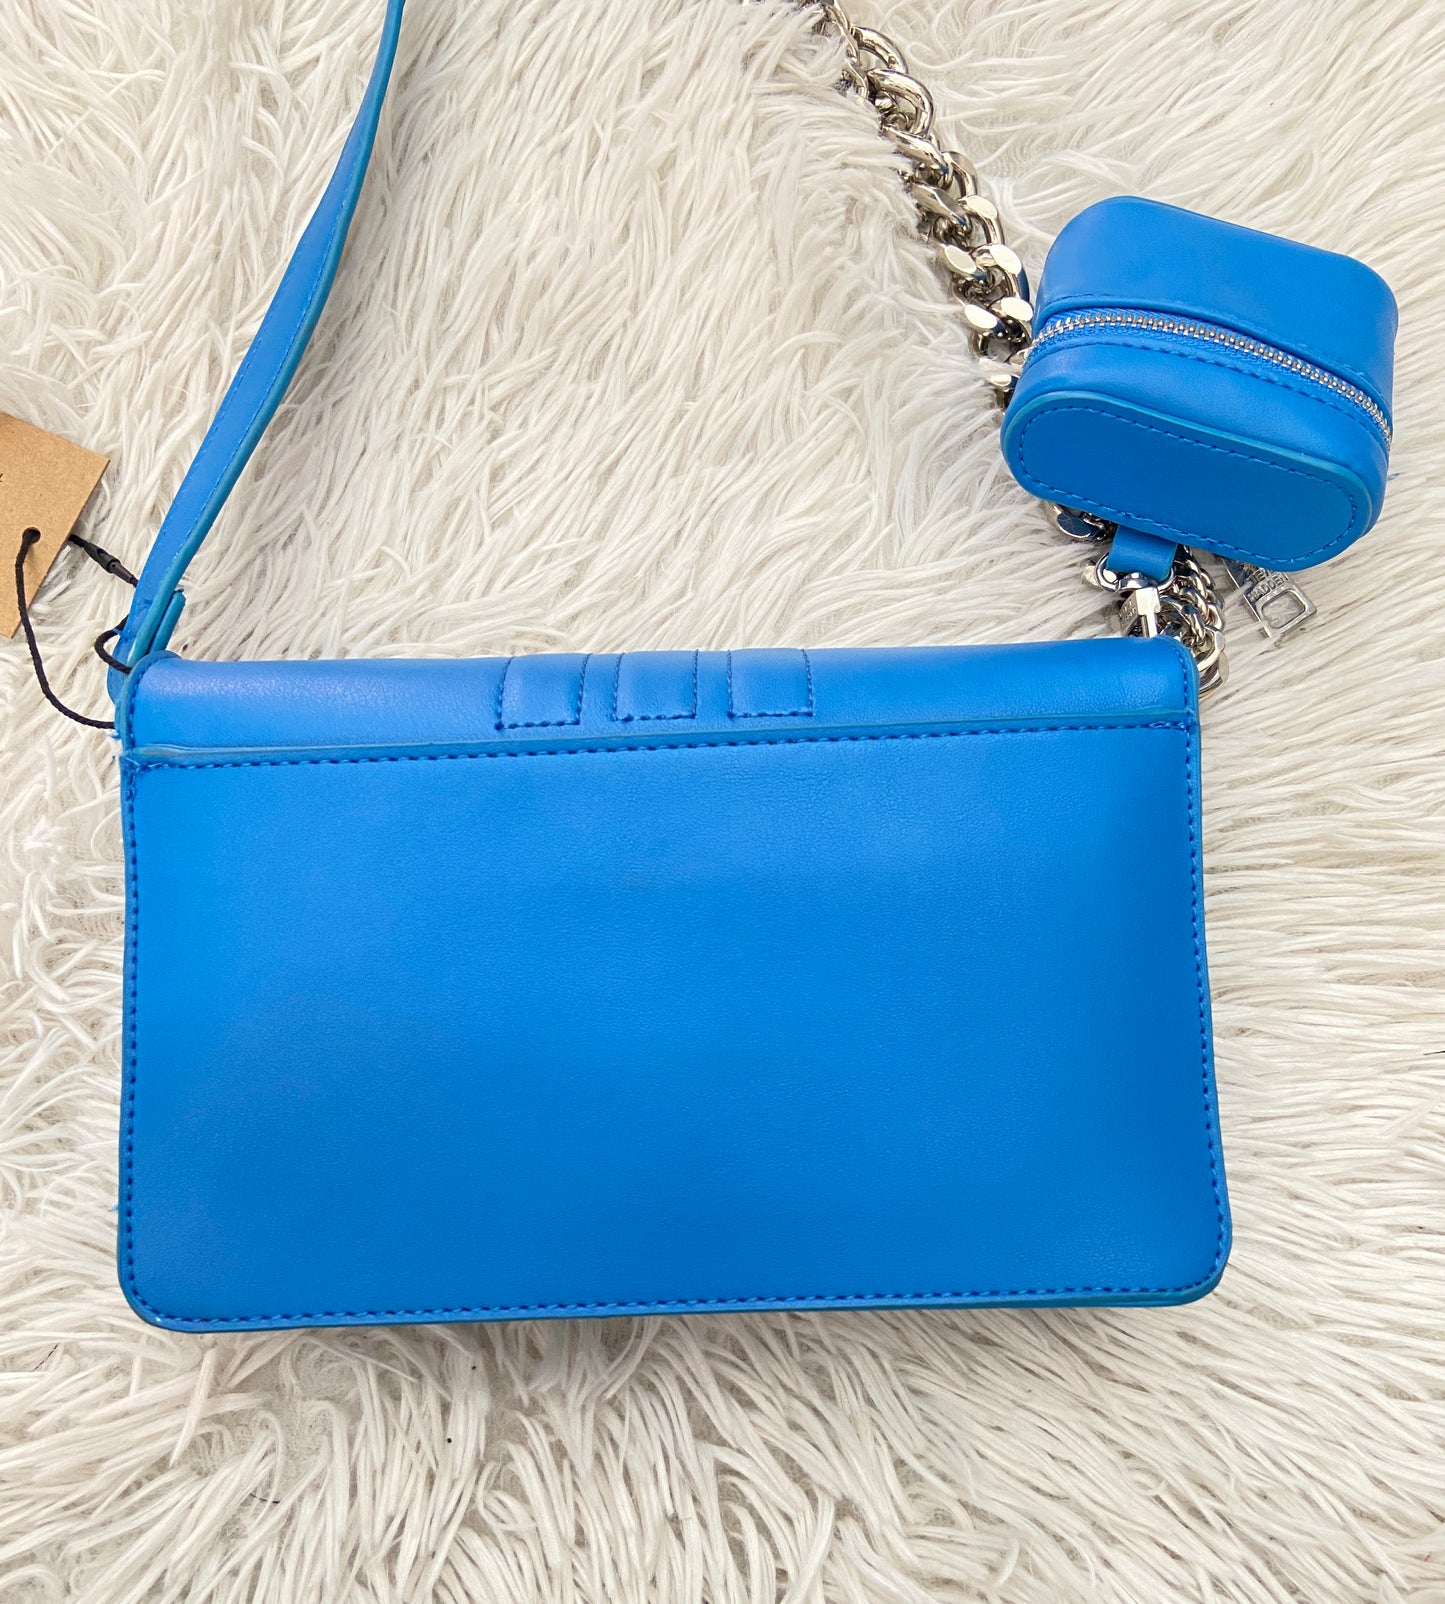 Cartera STEVE MADDEN original azul con placa en color plateado y mini cartera adicional.